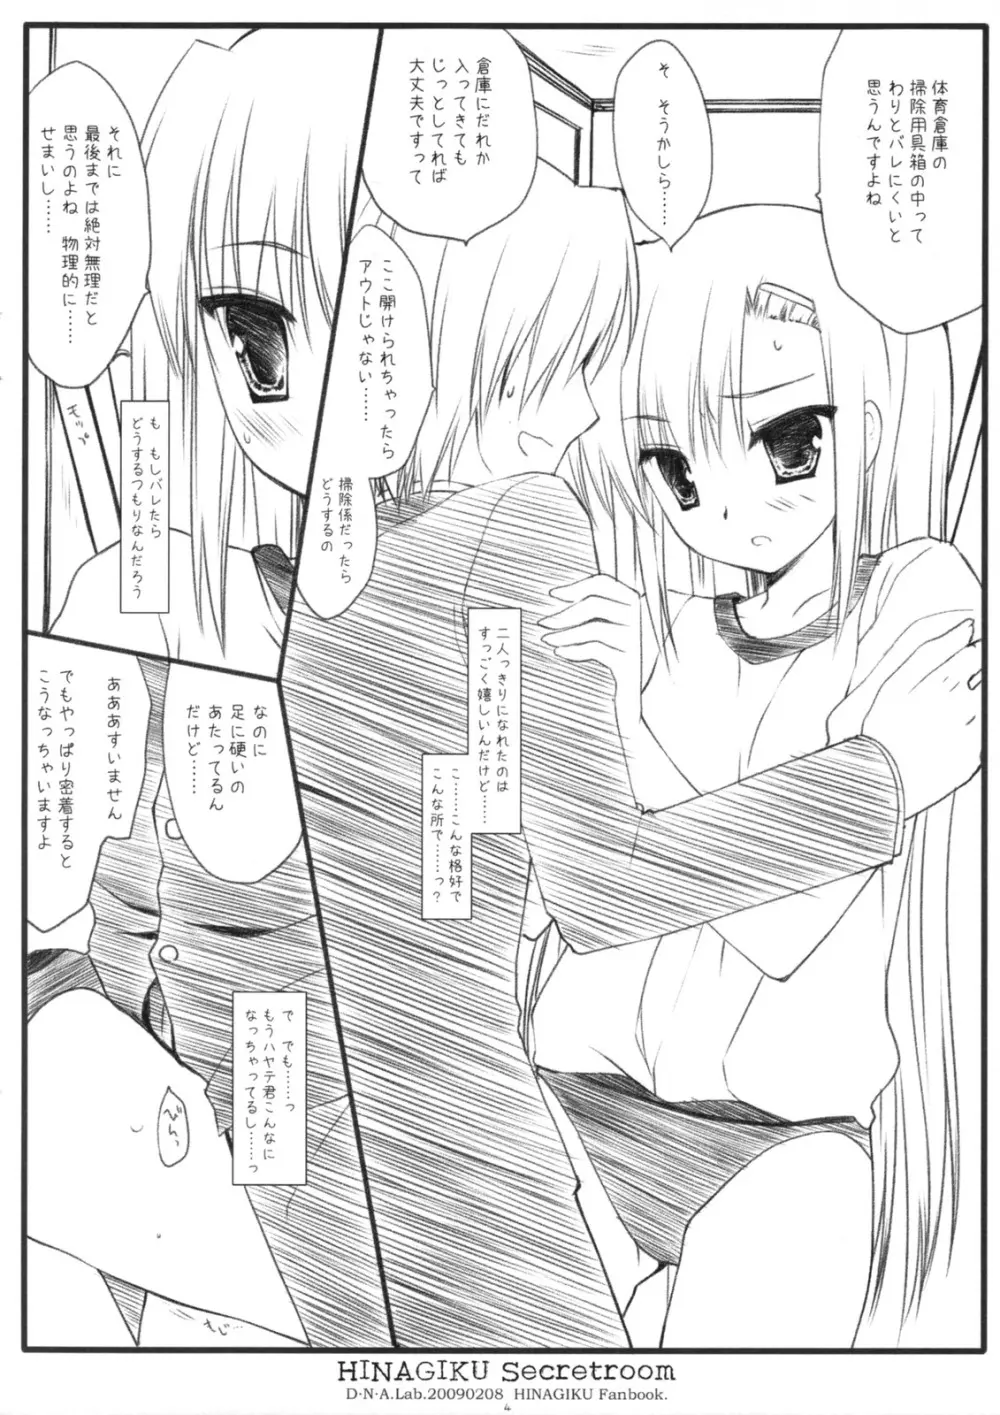 HINAGIKU Secretroom Page.3